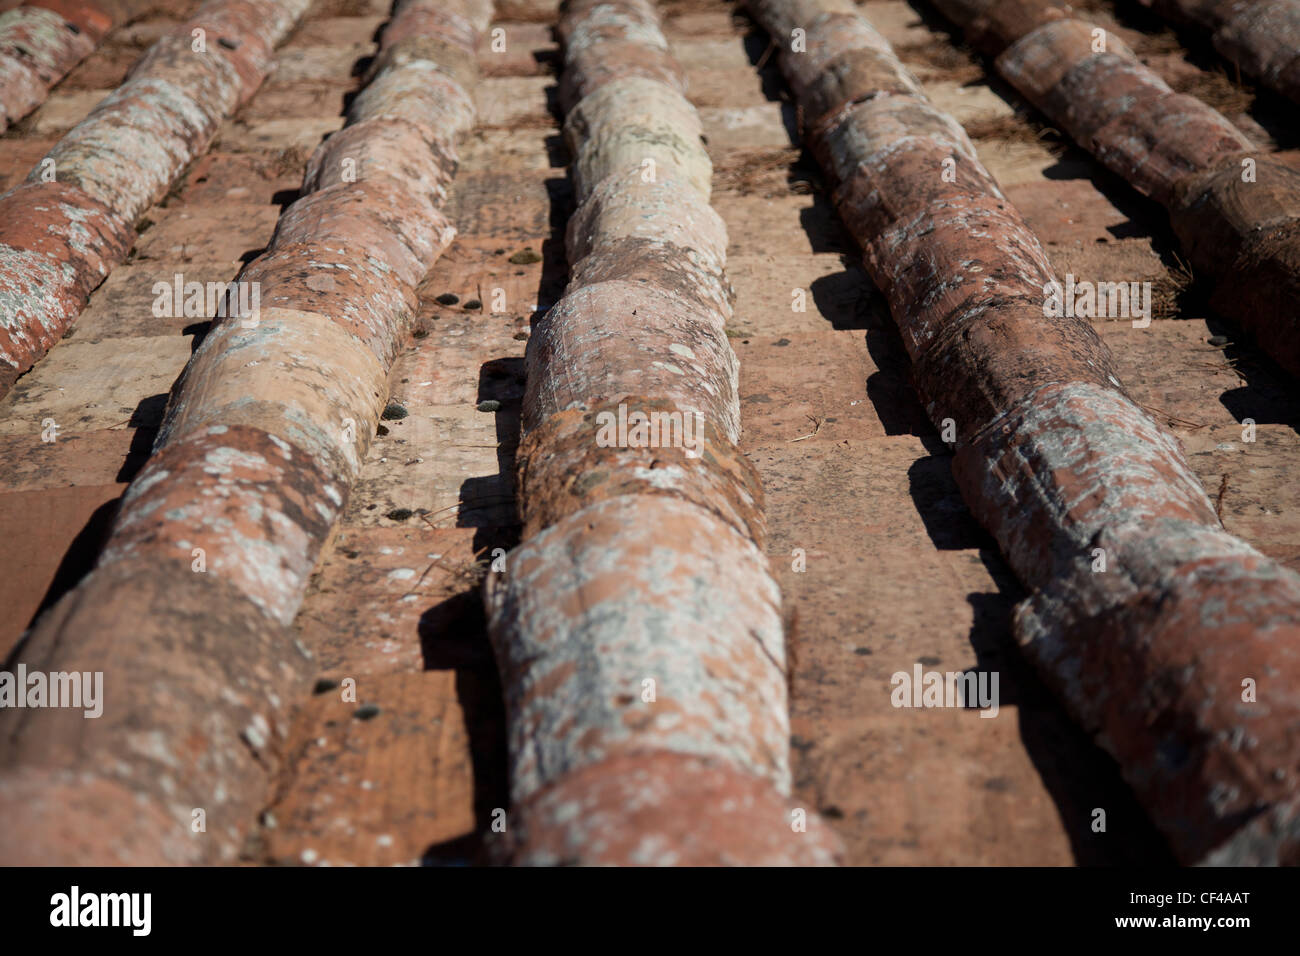 Alte Dachziegel hergestellt aus Ton (Lehm) in der Toskana, Italien  Stockfotografie - Alamy